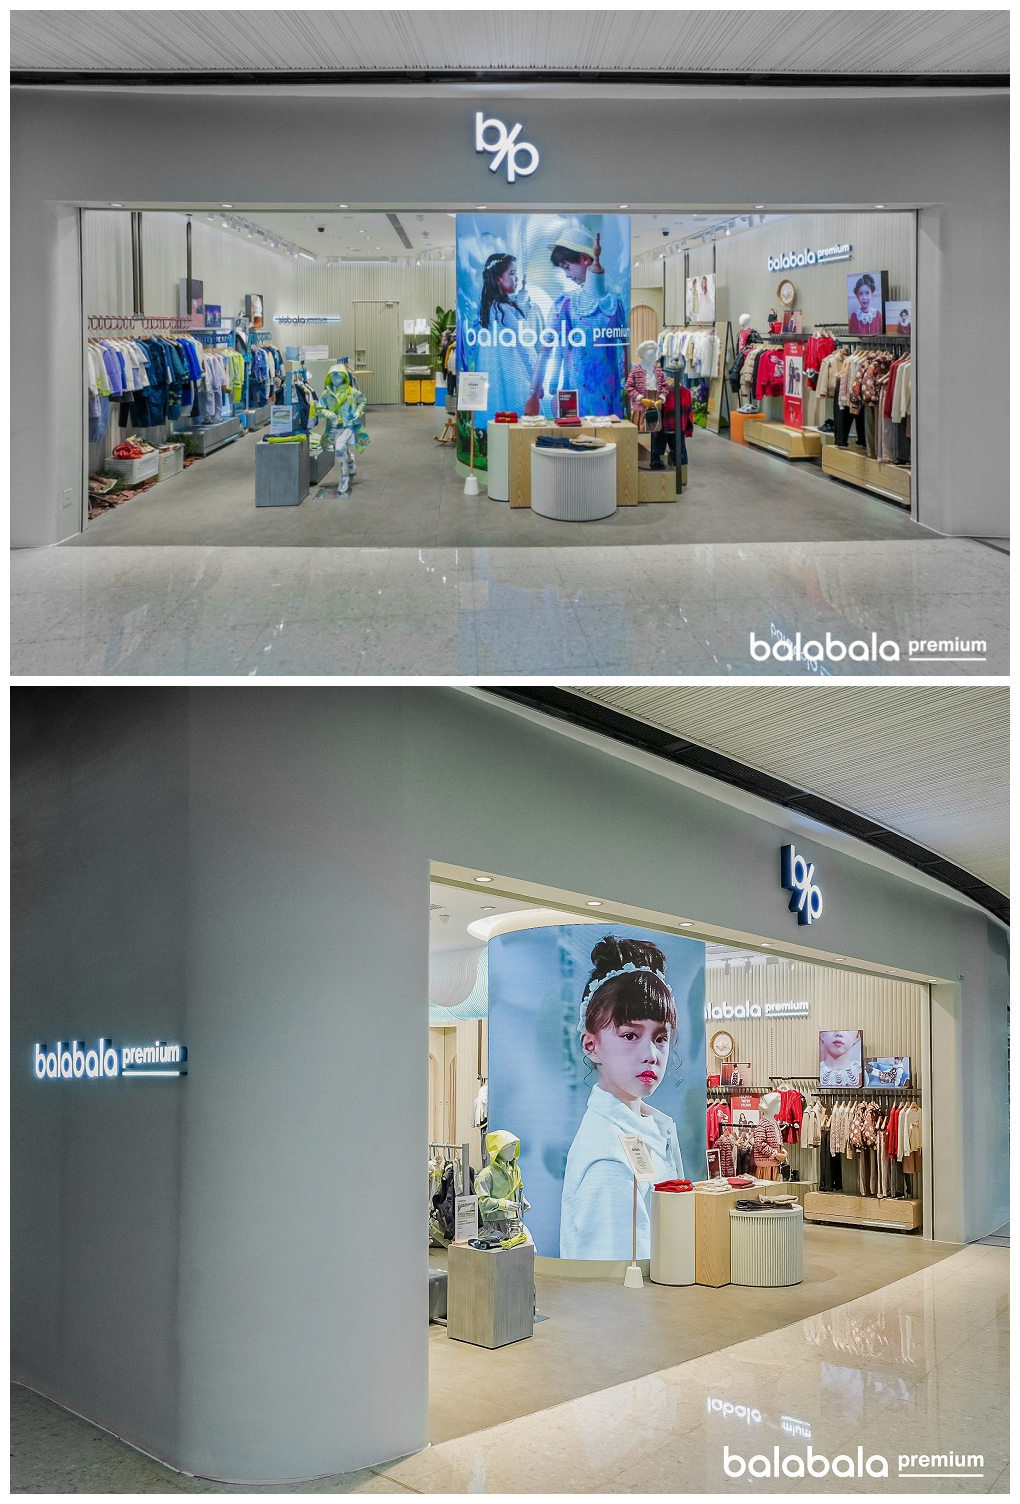 balabala premium華南首店亮相廣州高端商場IGC 加速高端童裝賽道布局